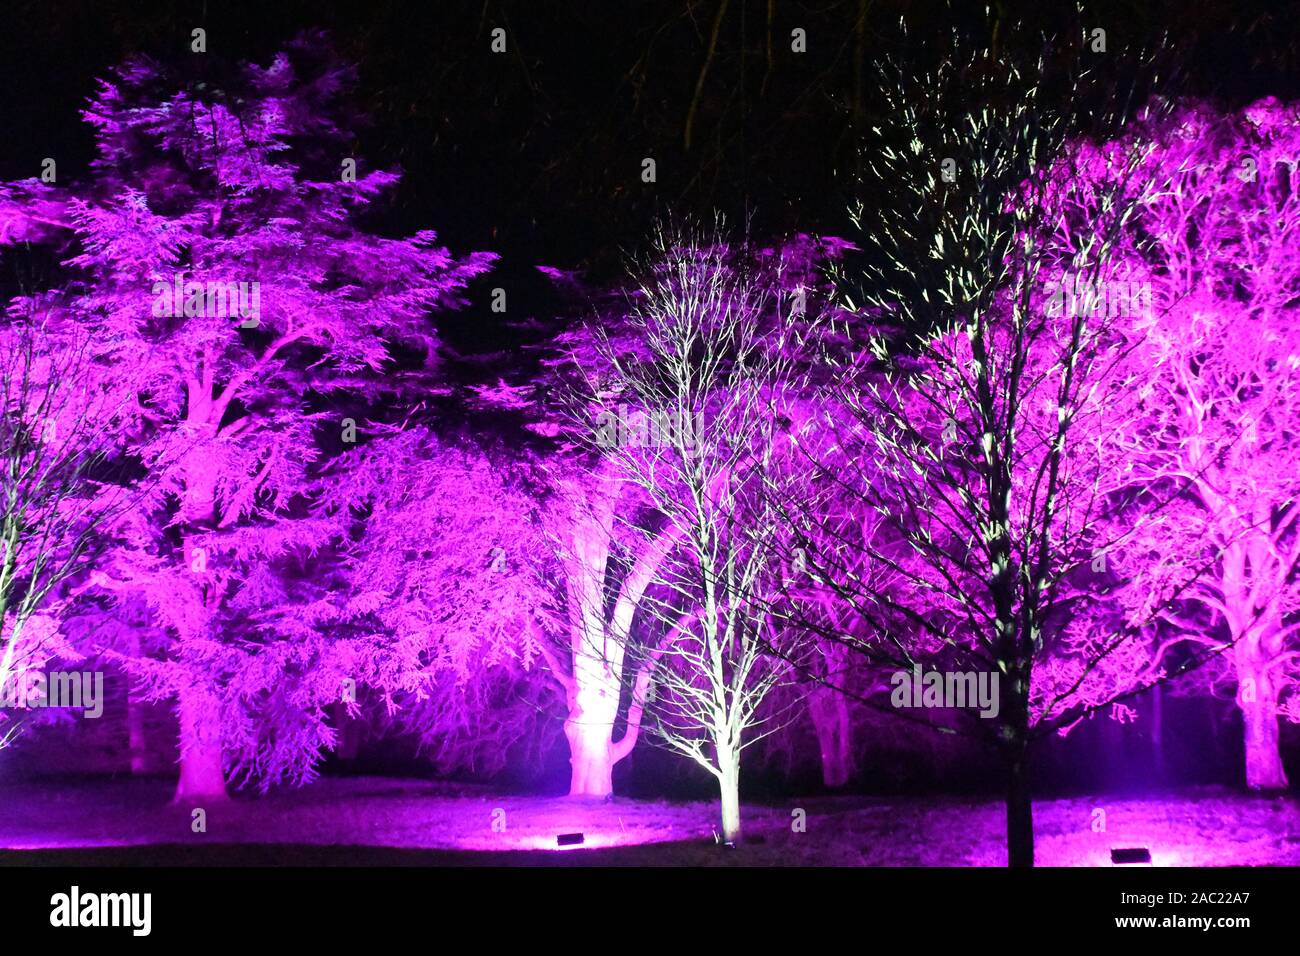 Sentier de la lumière d'hiver, de Noël 2019 à Waddesdon Manor, Waddesdon, España. Thème de la musique de Noël. Banque D'Images